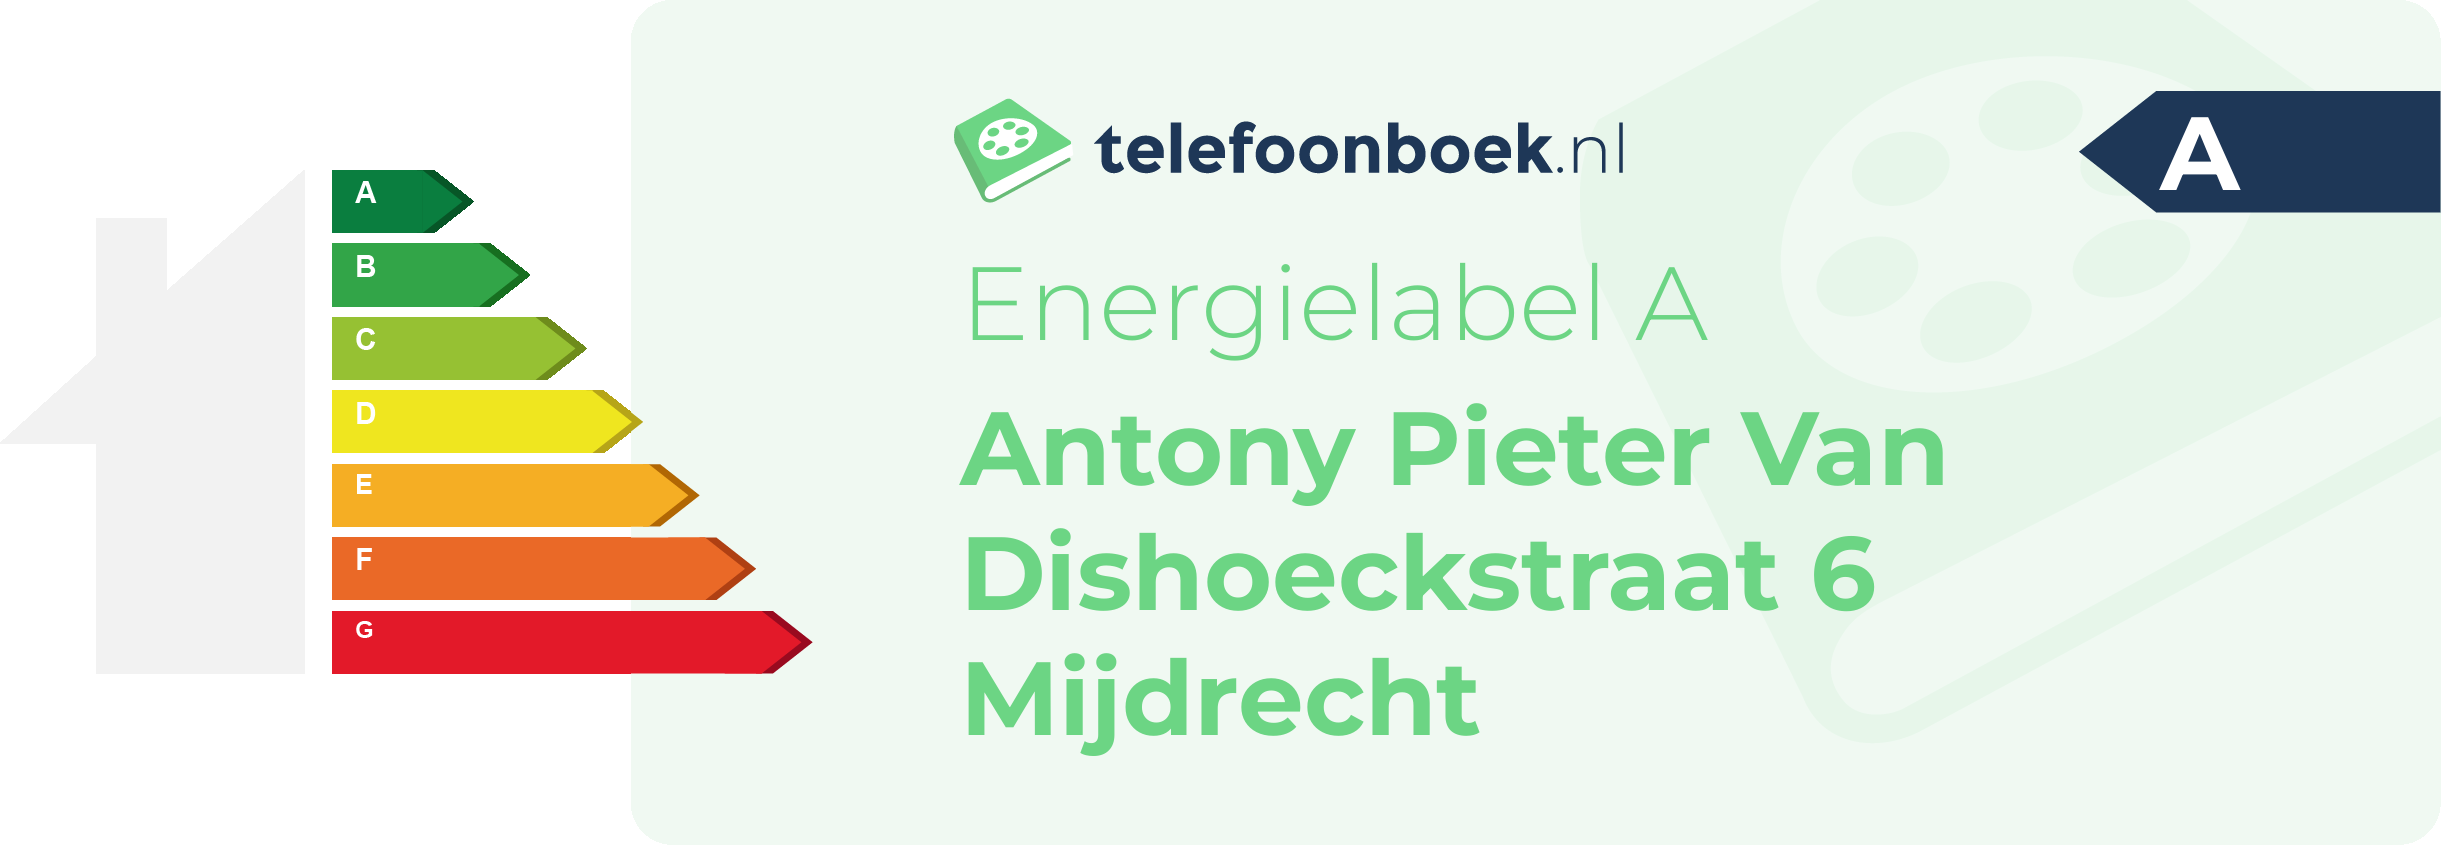 Energielabel Antony Pieter Van Dishoeckstraat 6 Mijdrecht